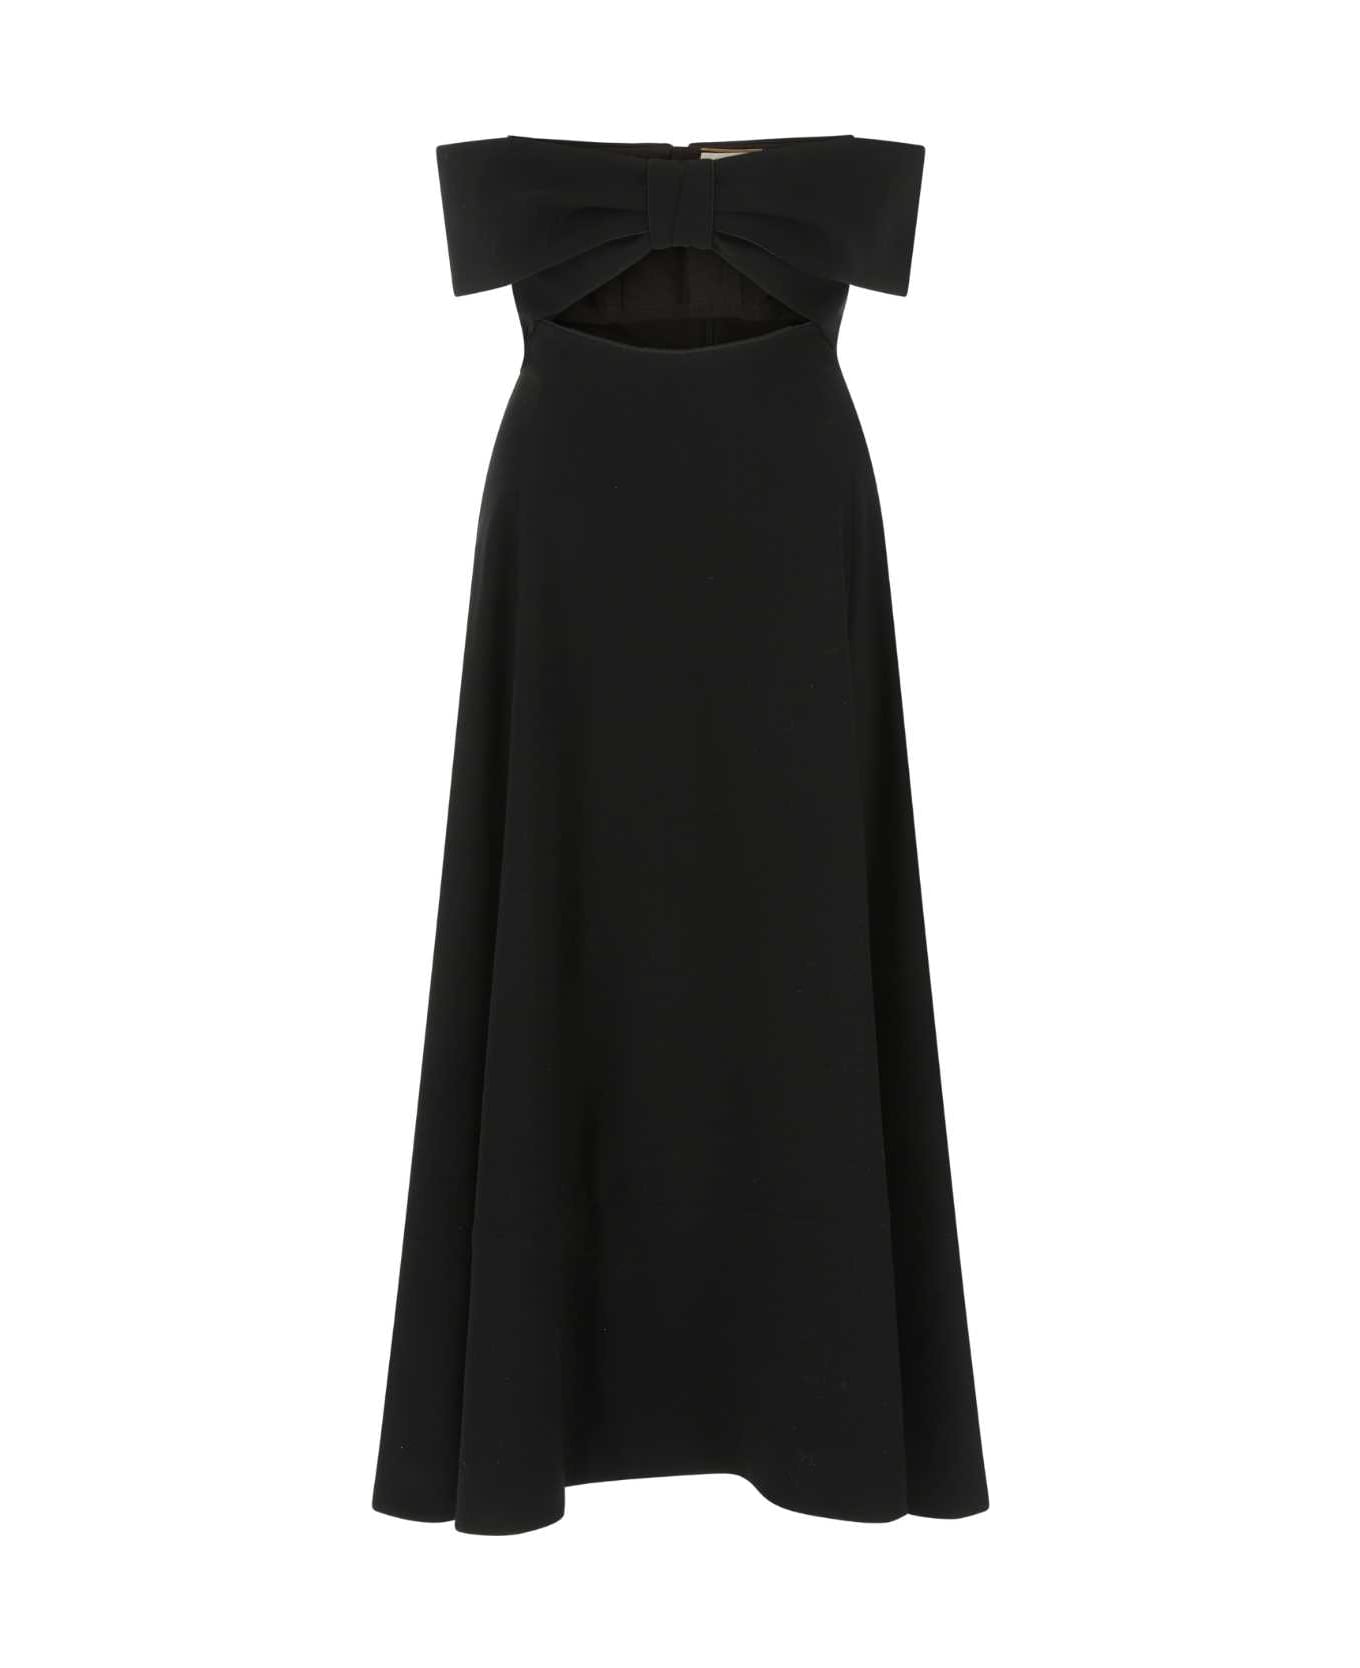 Saint Laurent Black Crepe Dress - 1000